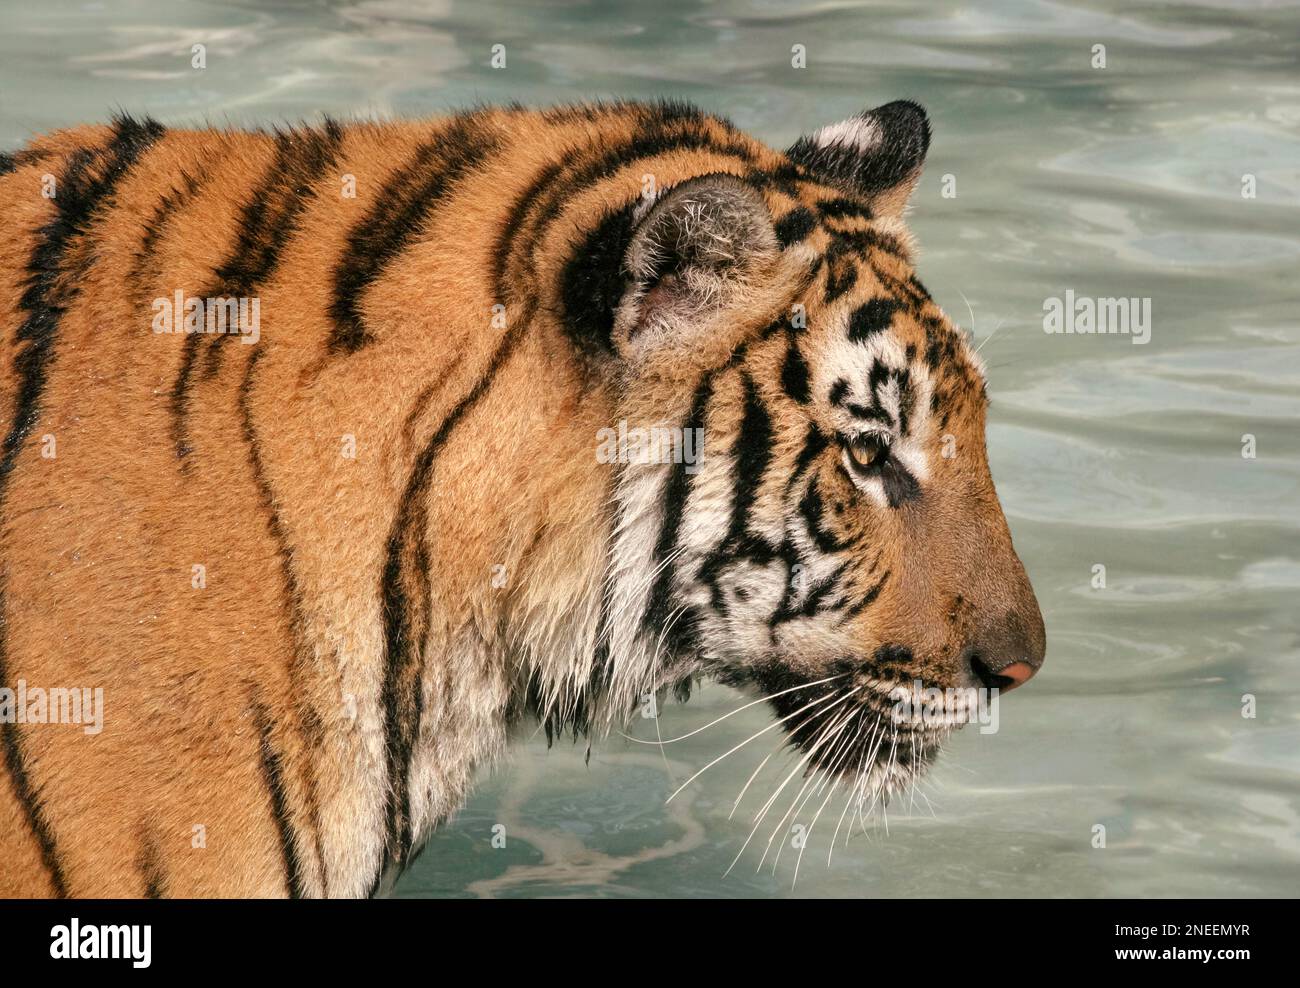 Ritratto di una tigre indocinese (Panthera Tigris Corbetti) gatto grande, in una pozza d'acqua, fissando in avanti, primo piano vista laterale ritratto, pelliccia particolare Foto Stock